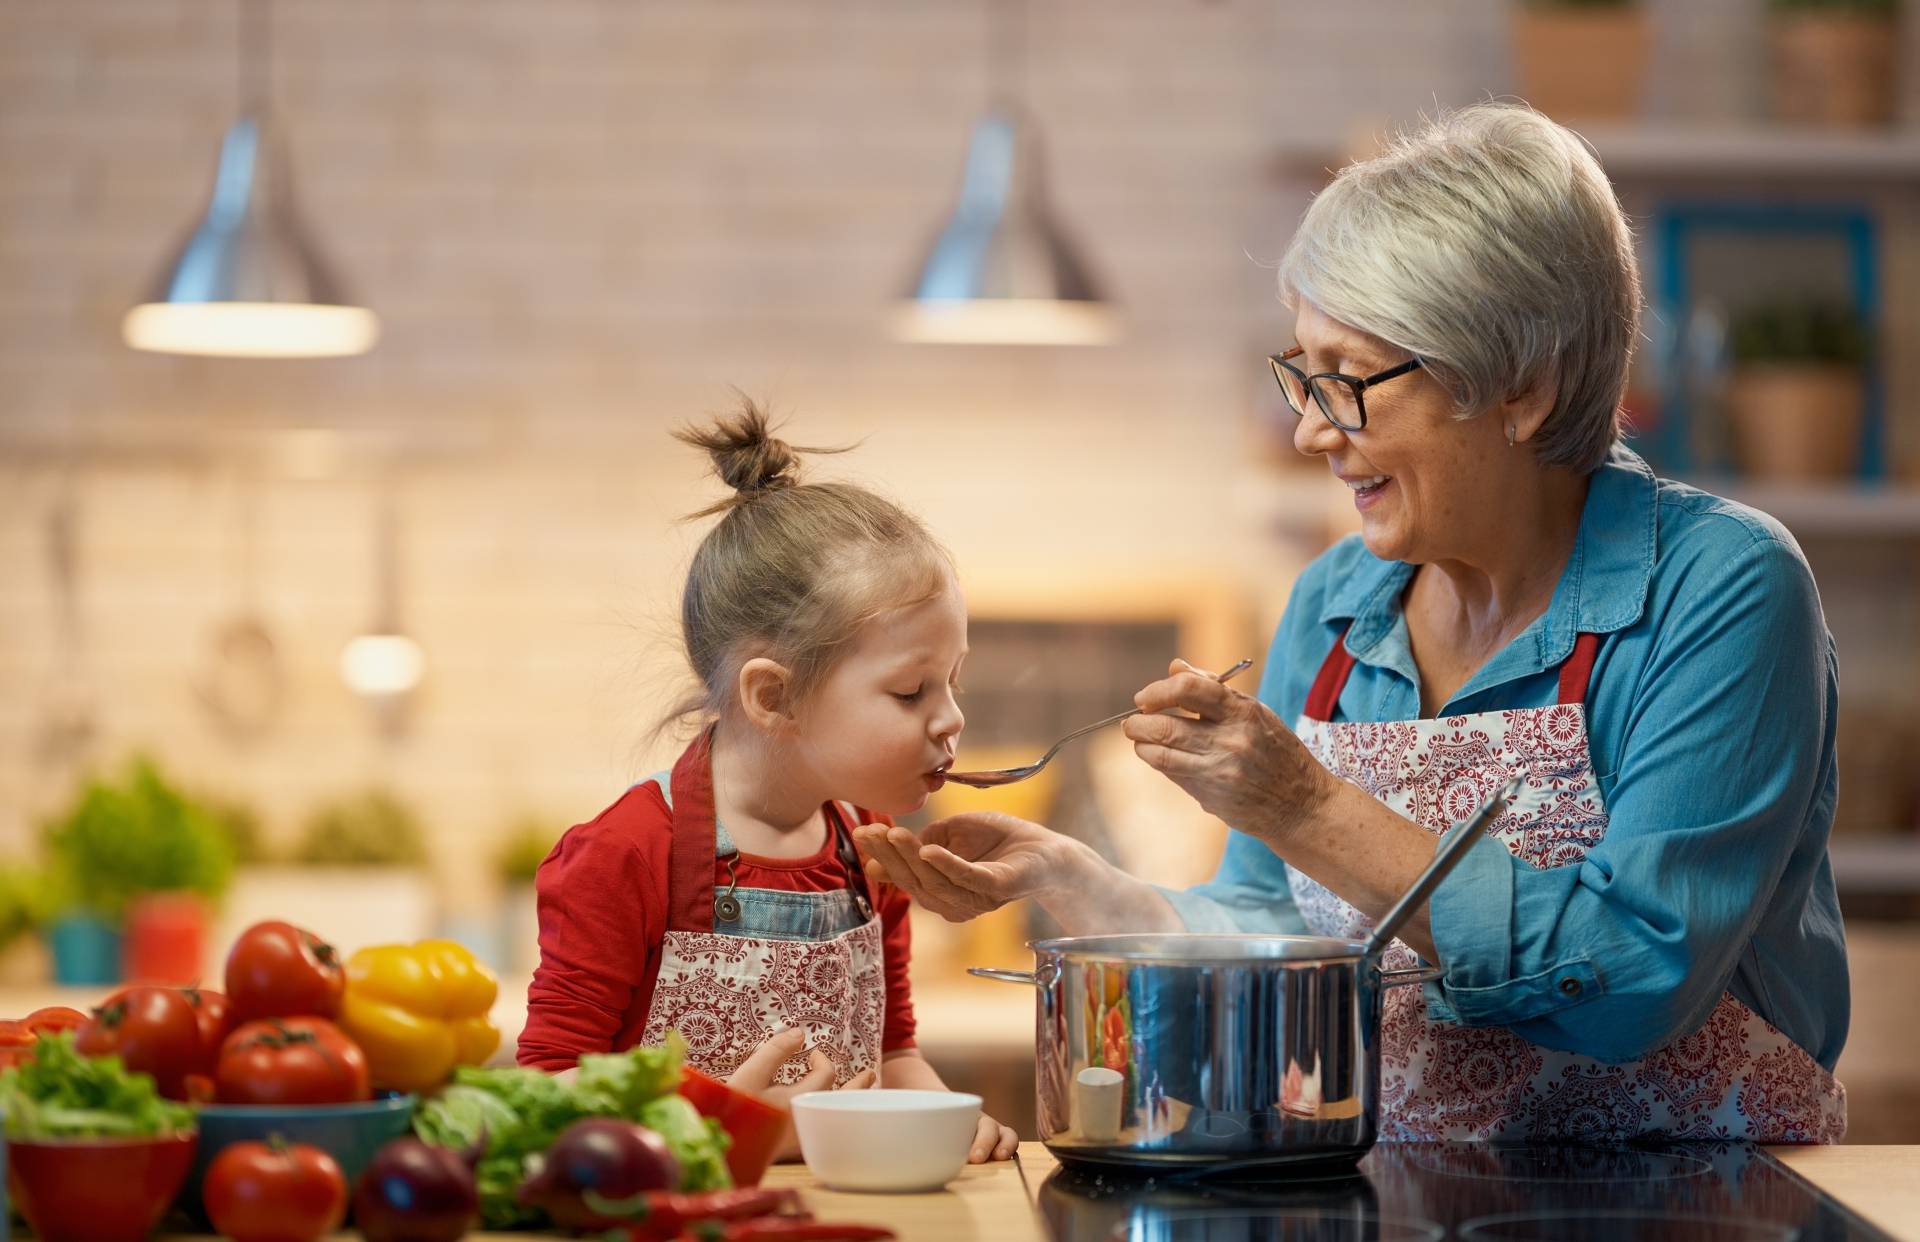 Wspólne posiłki i wspólne gotowanie z dzieckiem - dlaczego są takie ważne? Babcia uczy wnuczkę gotować w domowej kuchni.